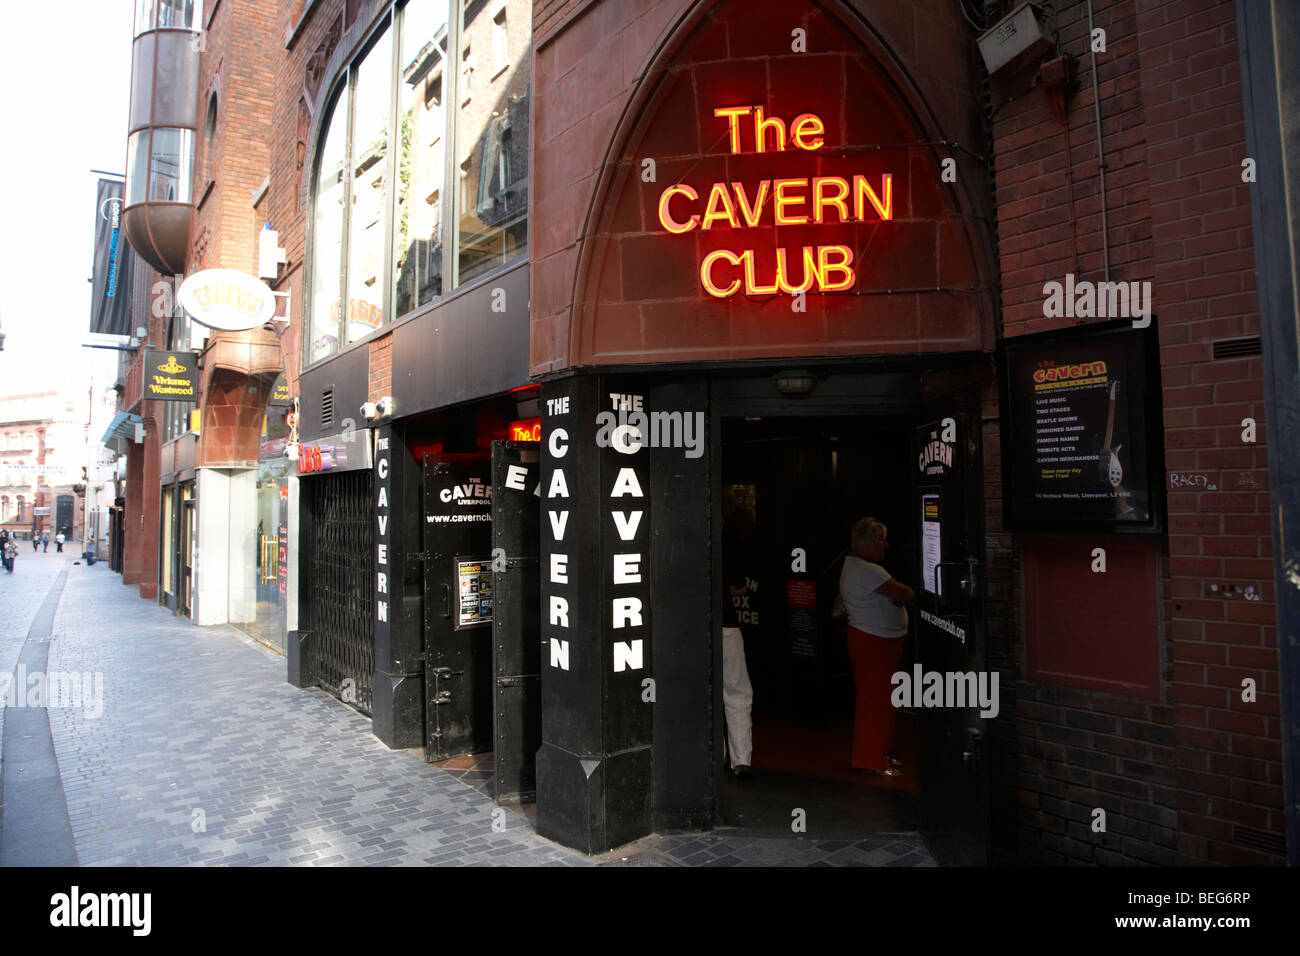 der neue Cavern-Club in der Mathew Street in Liverpool Stadtzentrum Geburtsort der Beatles Merseyside England uk Stockfoto